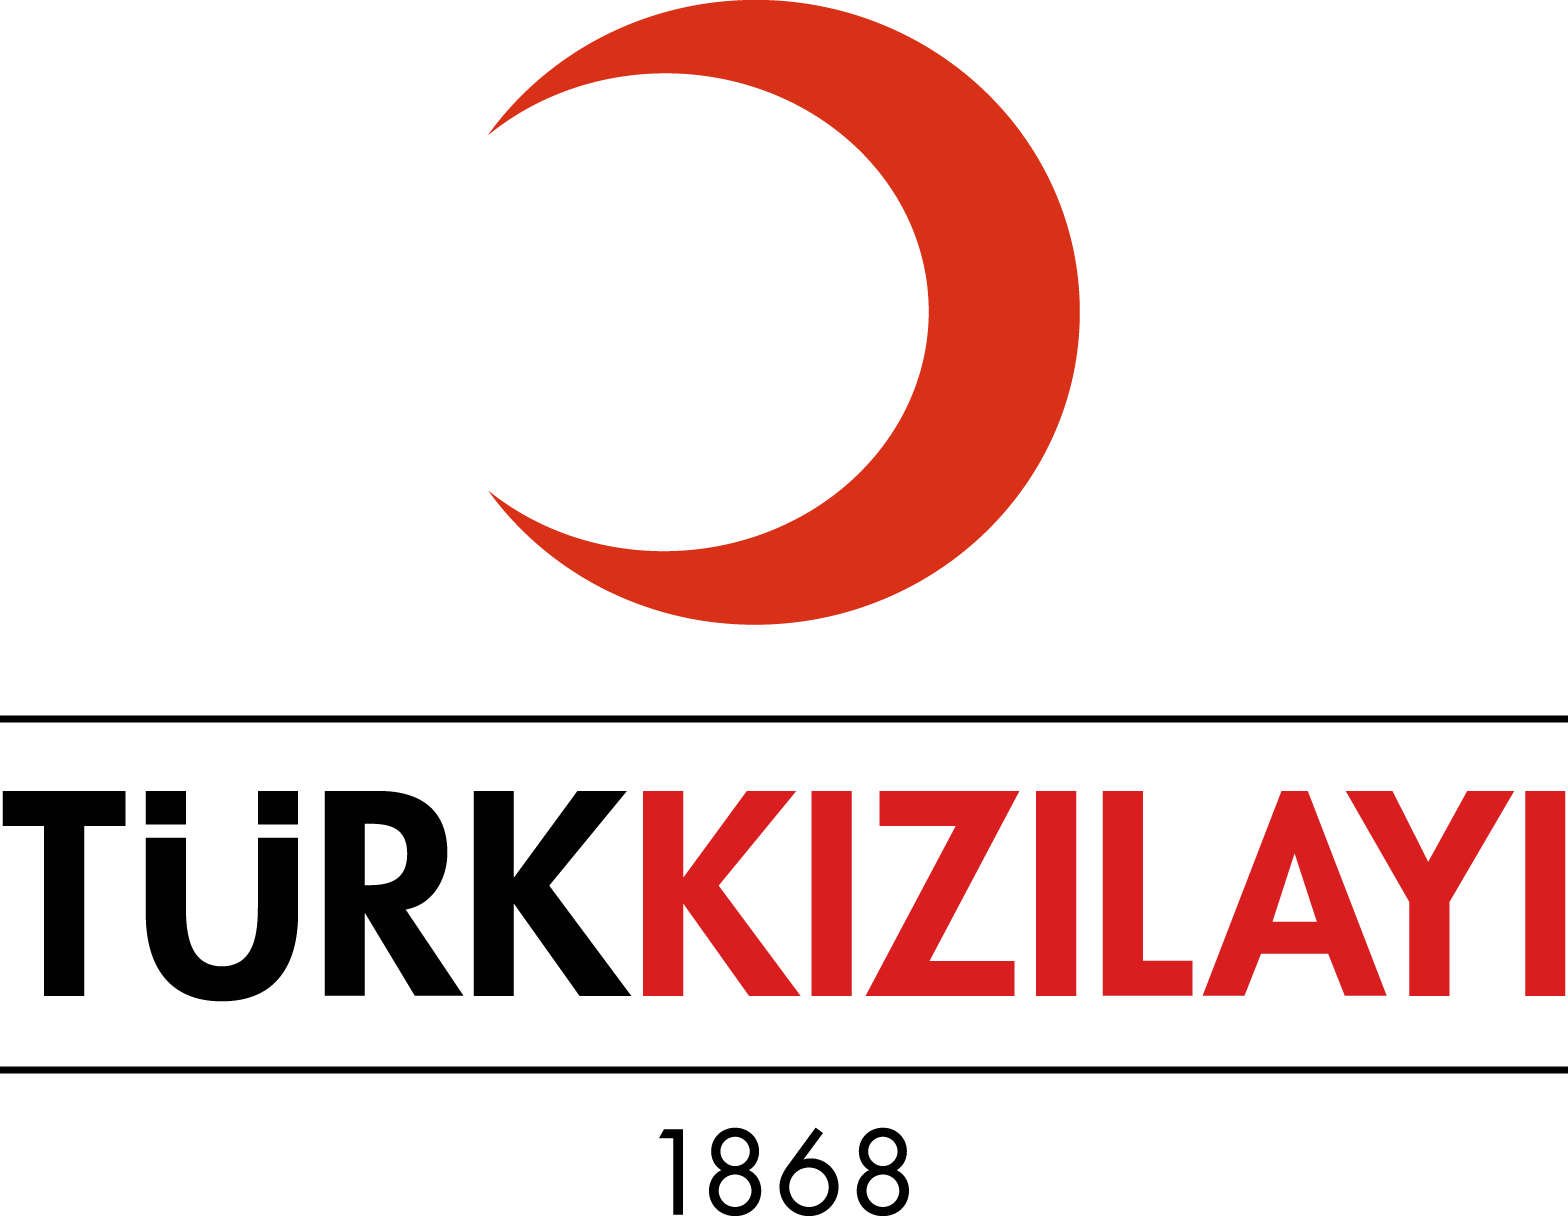 turk kizilayi logo